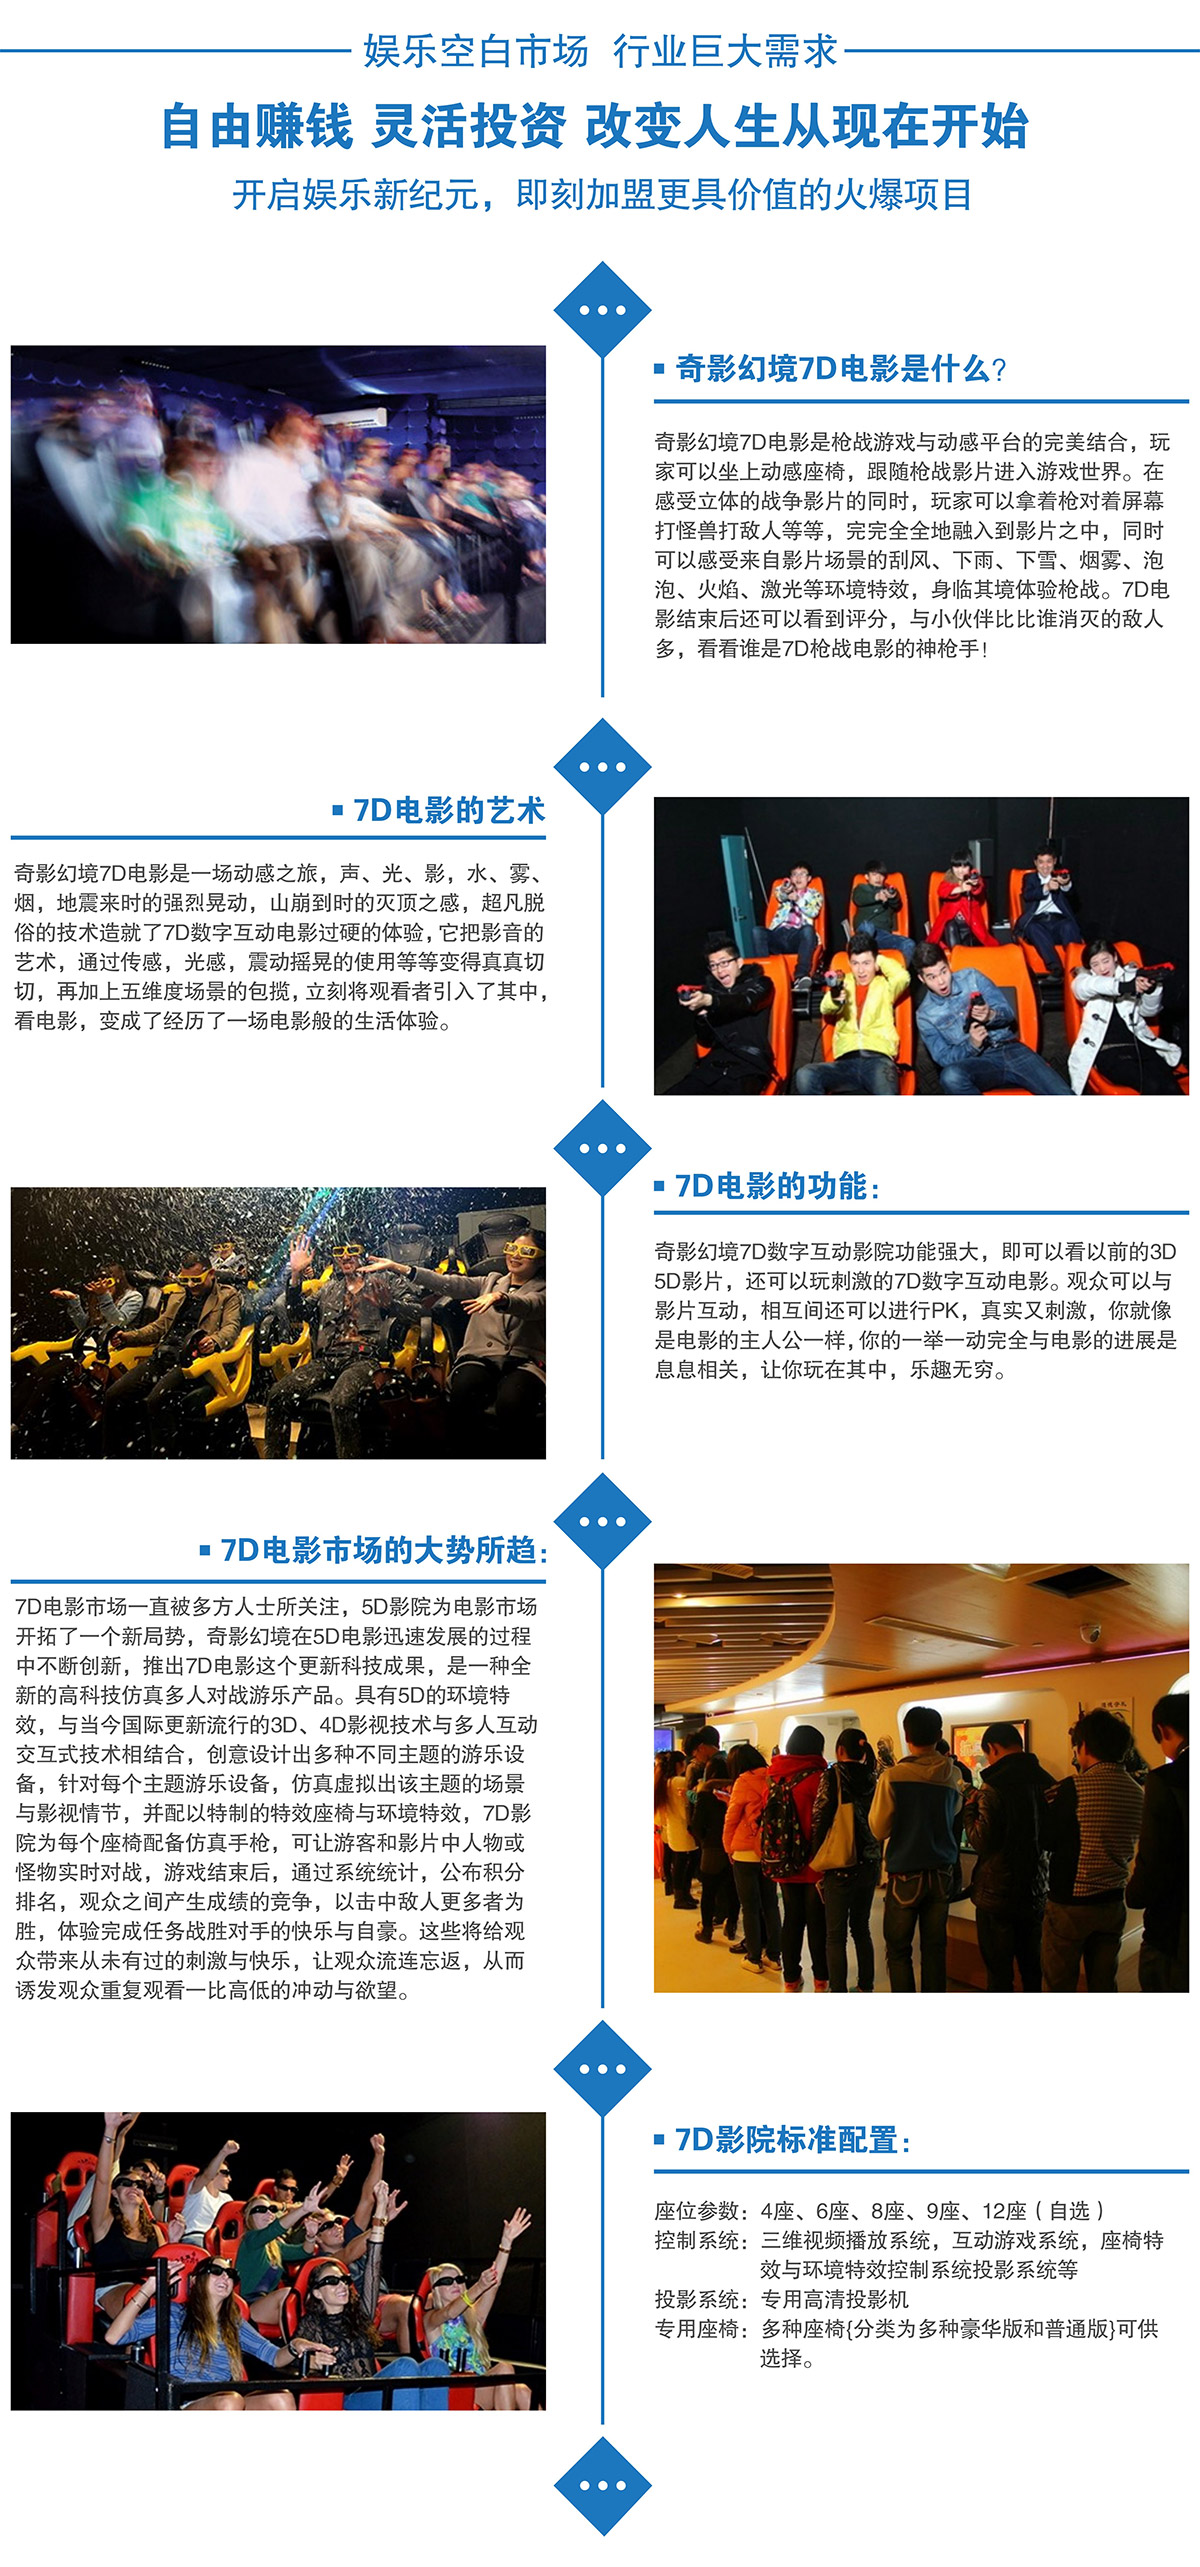 广东省广州奇影幻境娱乐空白市场7D电影行业巨大需求.jpg